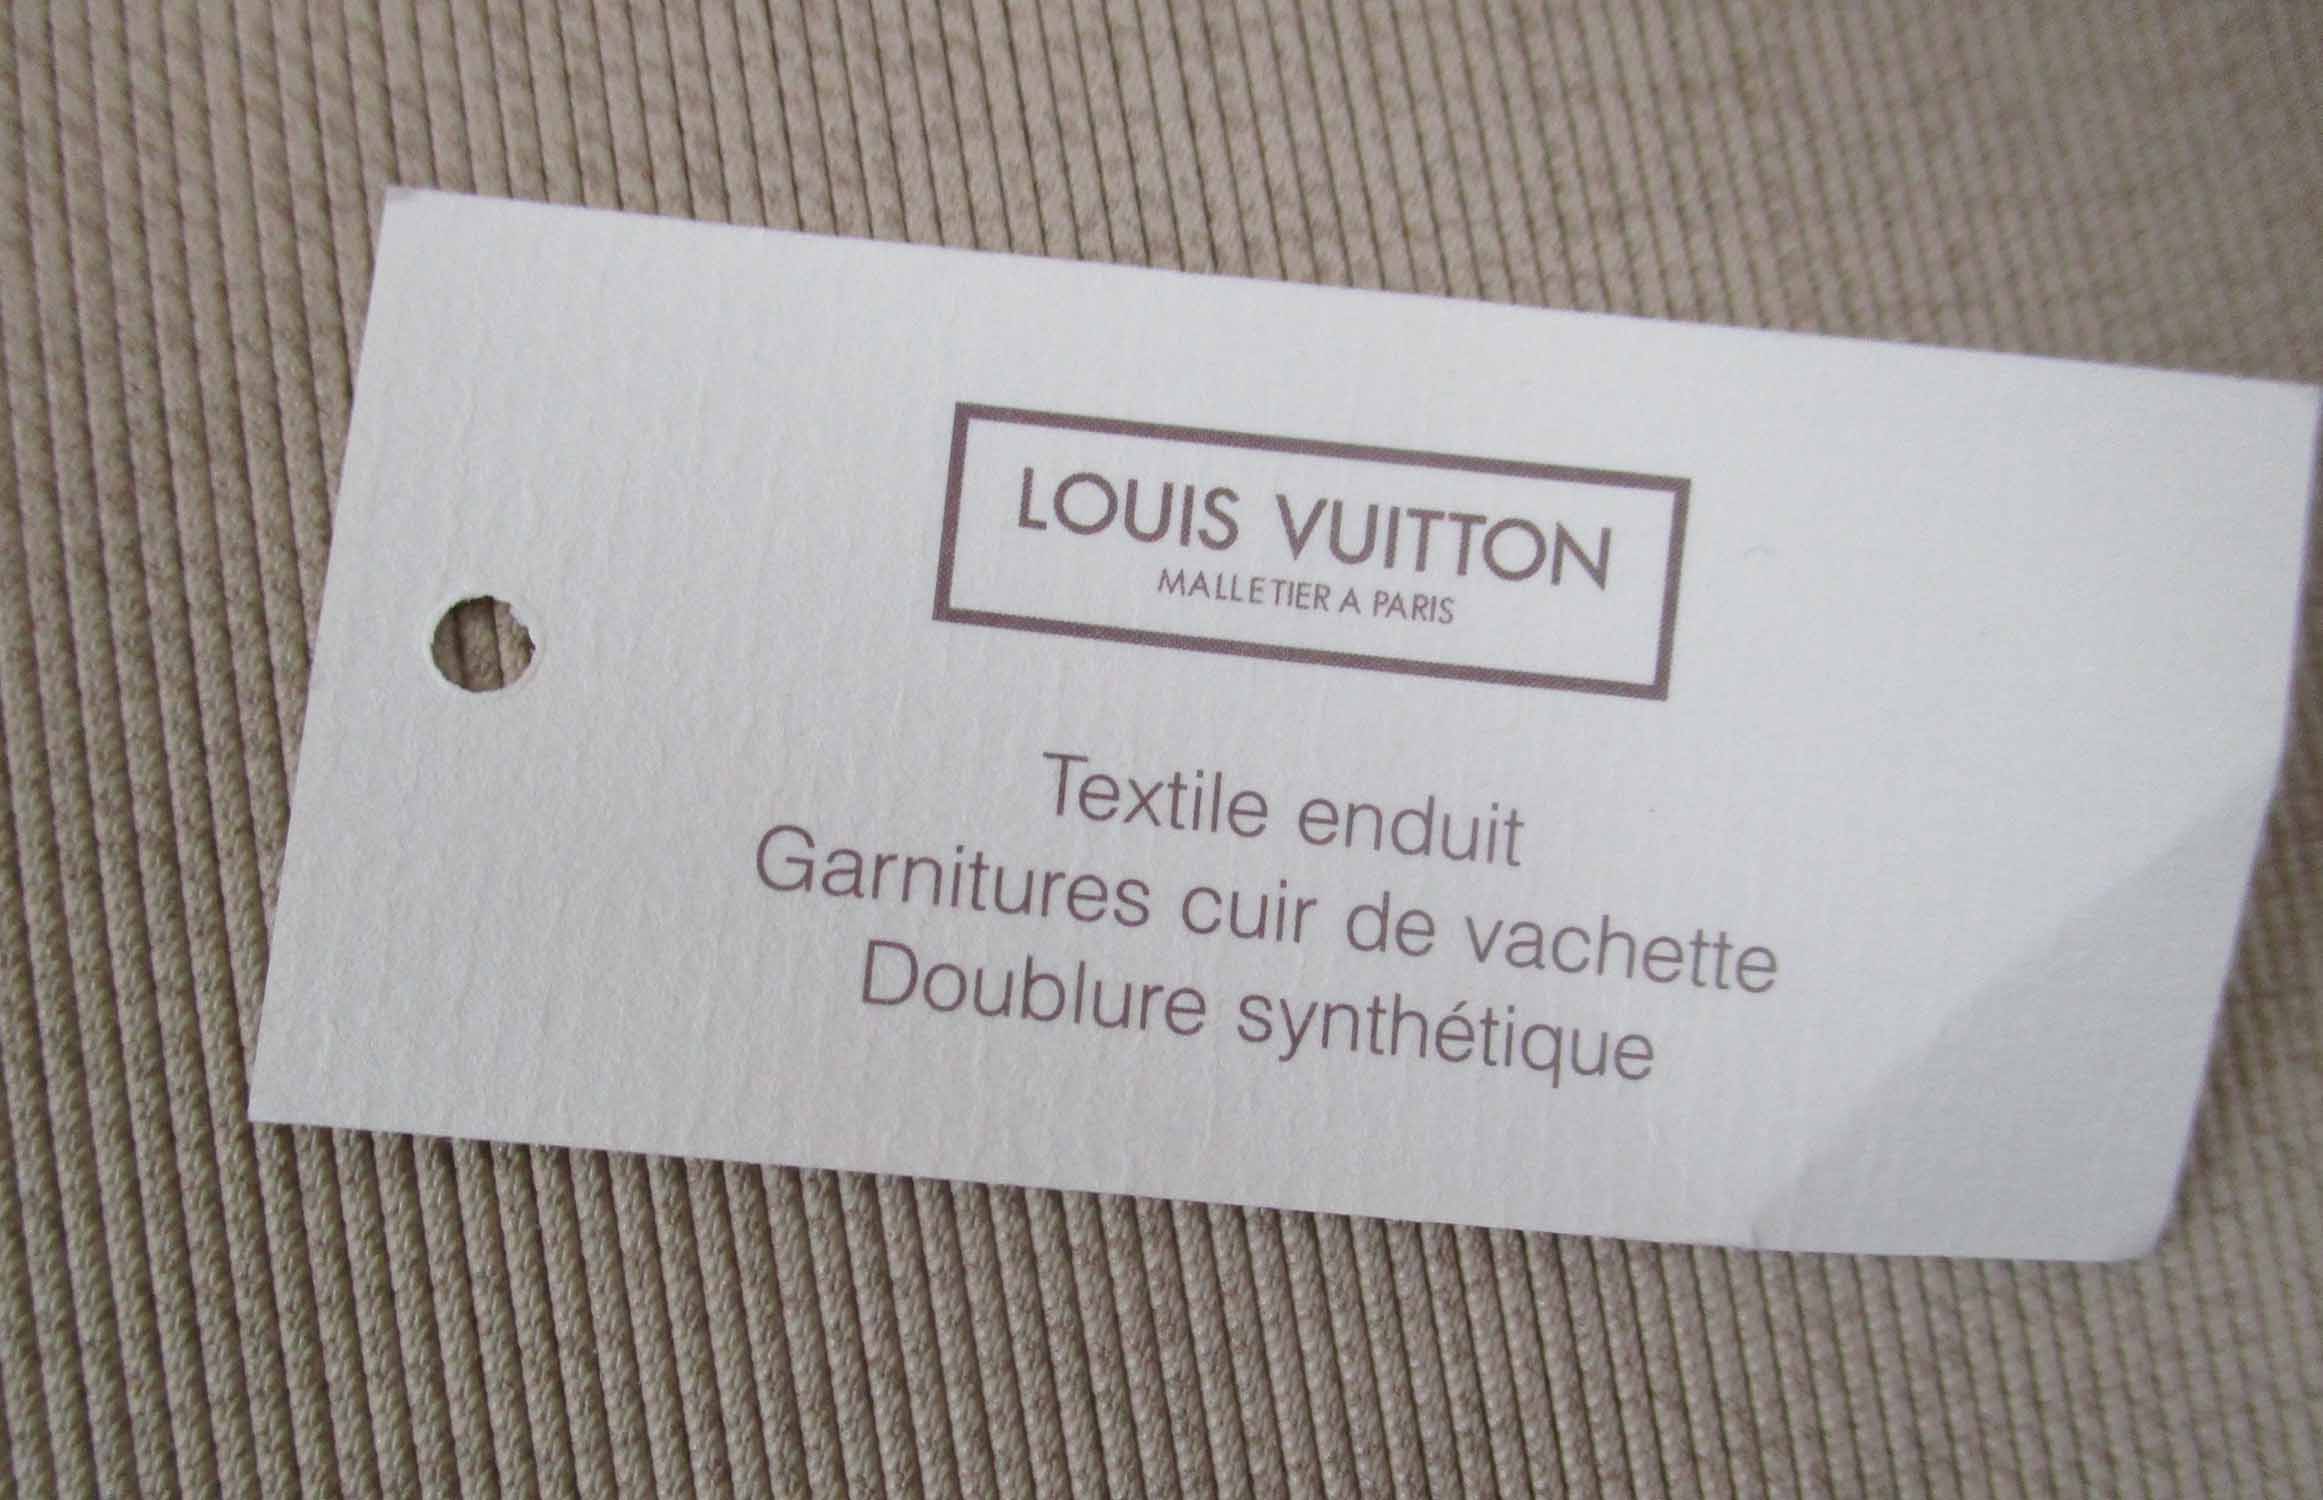 LOUIS VUITTON 'SIRIUS 70' MONOGRAM SUITCASE, plus original 'Saks Fifth  Avenue' bill of sale.